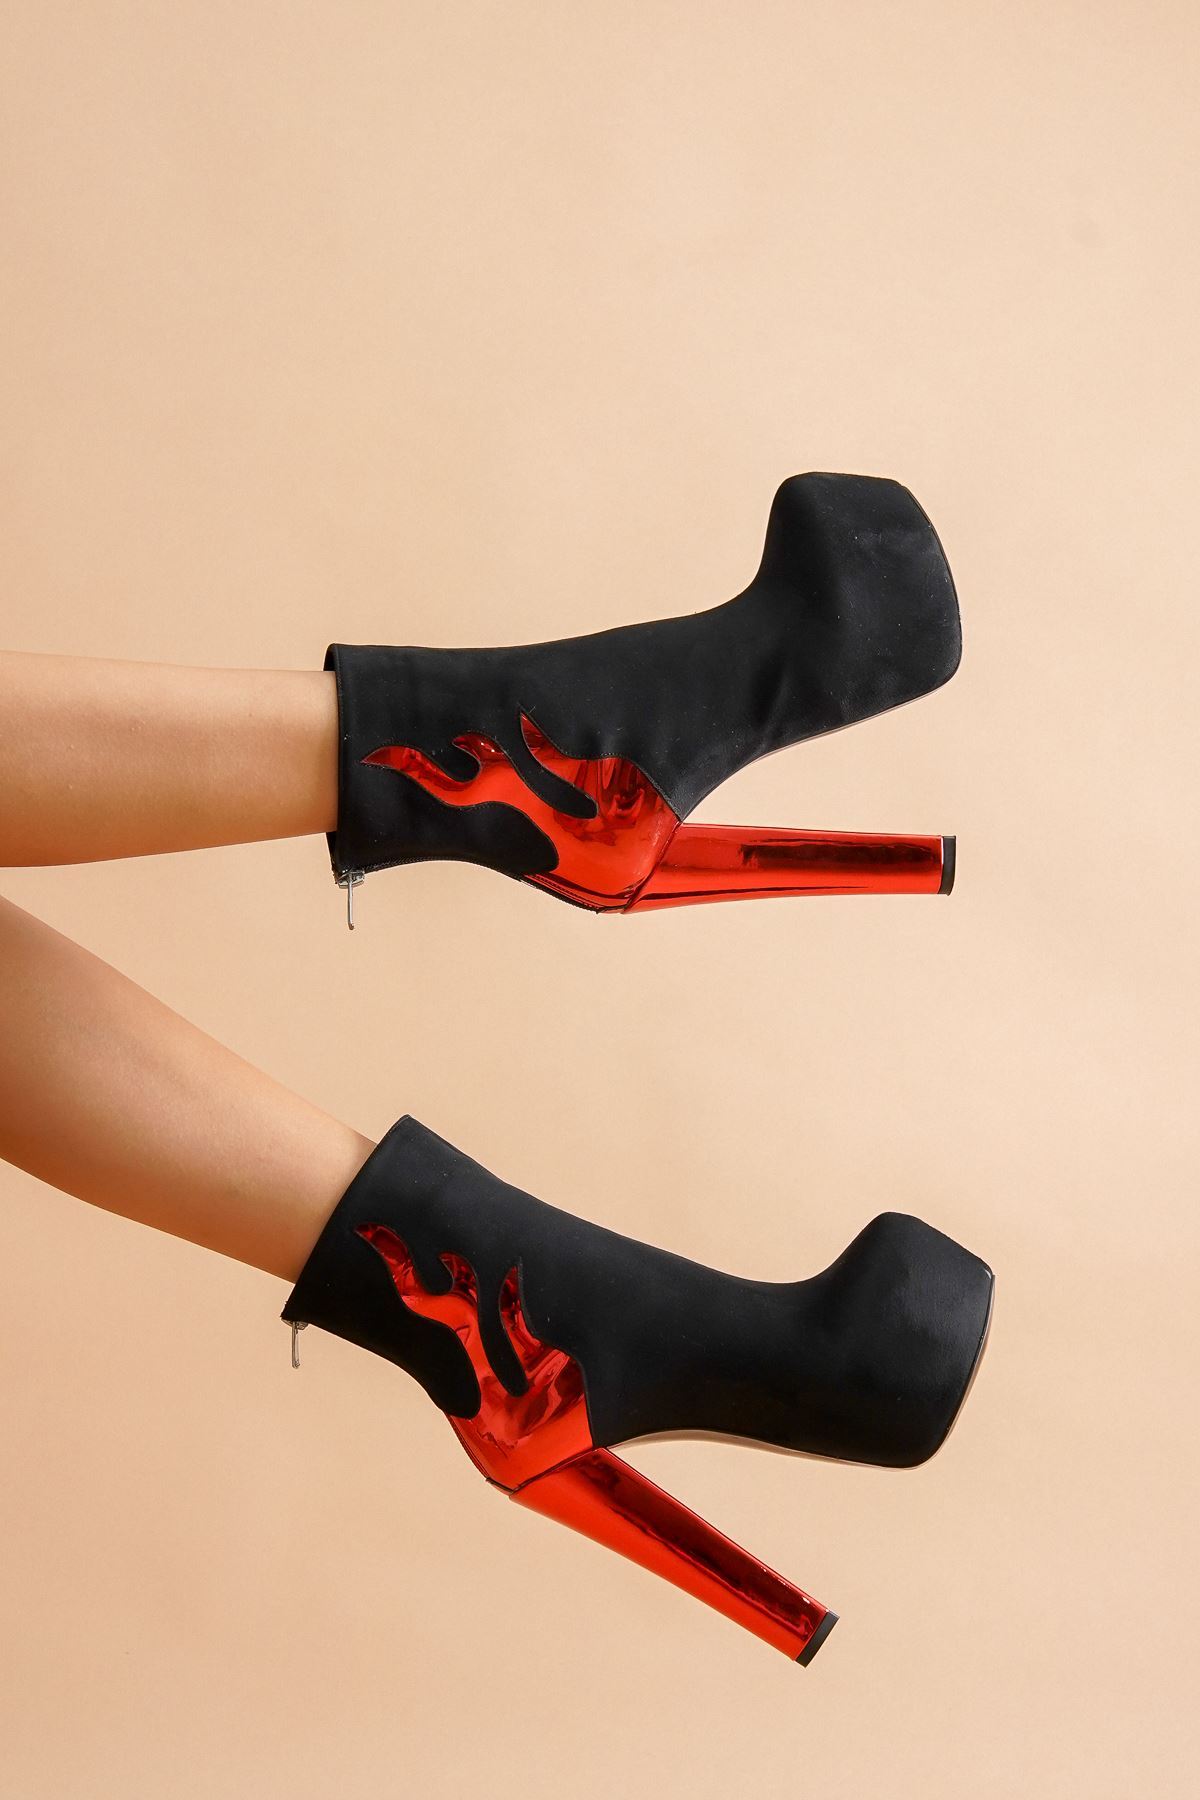 Kaizer Siyah Süet Kırmızı Alevli Yüksek Topuklu Kadın Bot